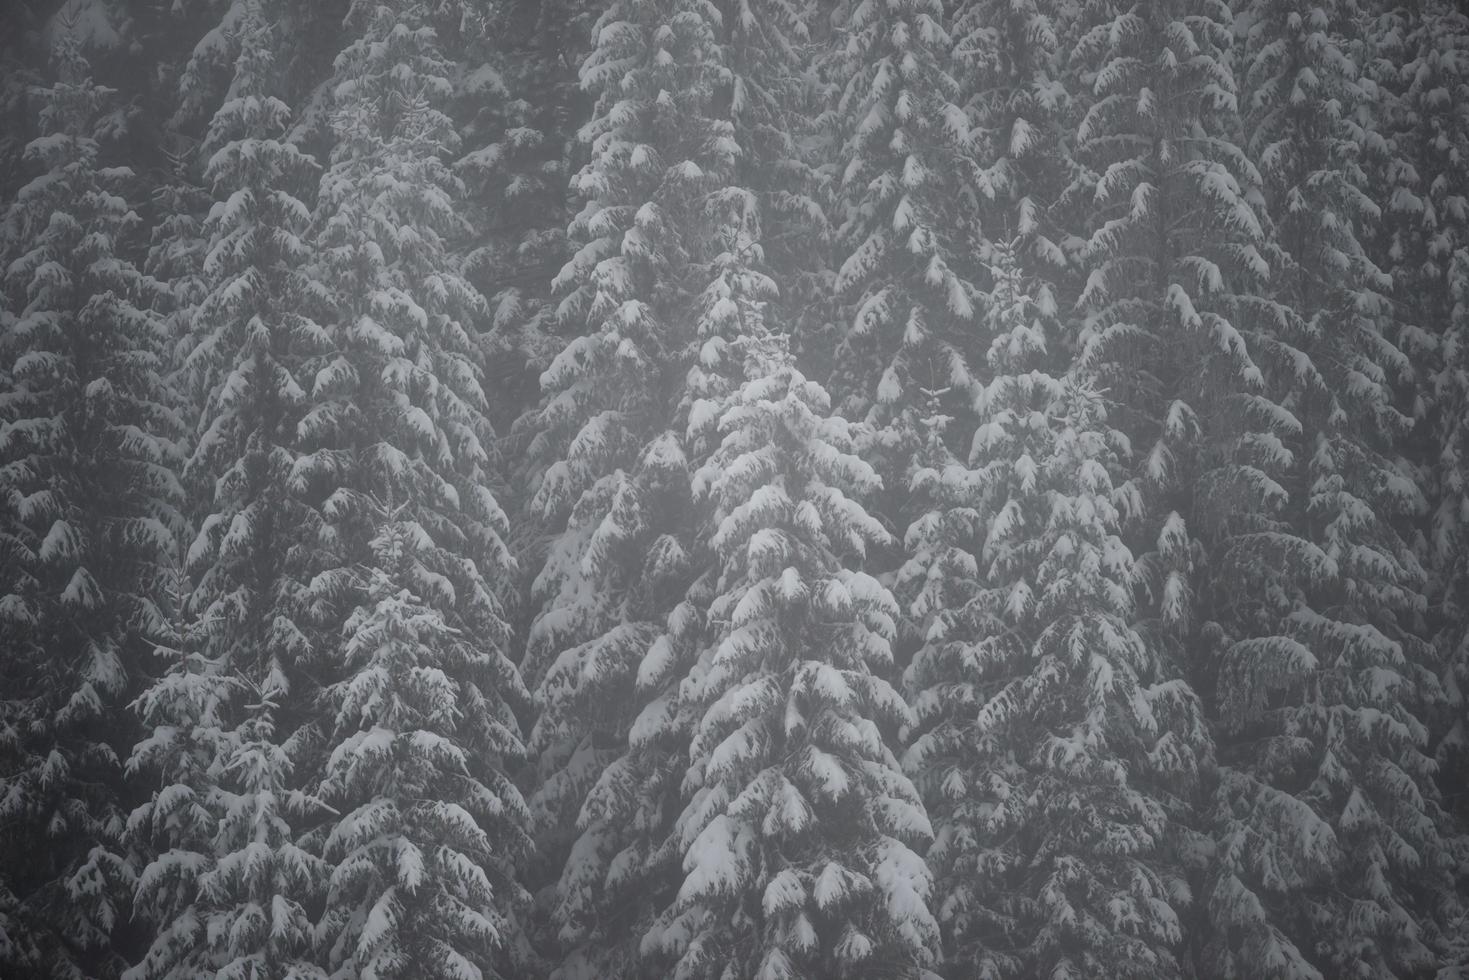 kerst groenblijvende dennenboom bedekt met verse sneeuw foto